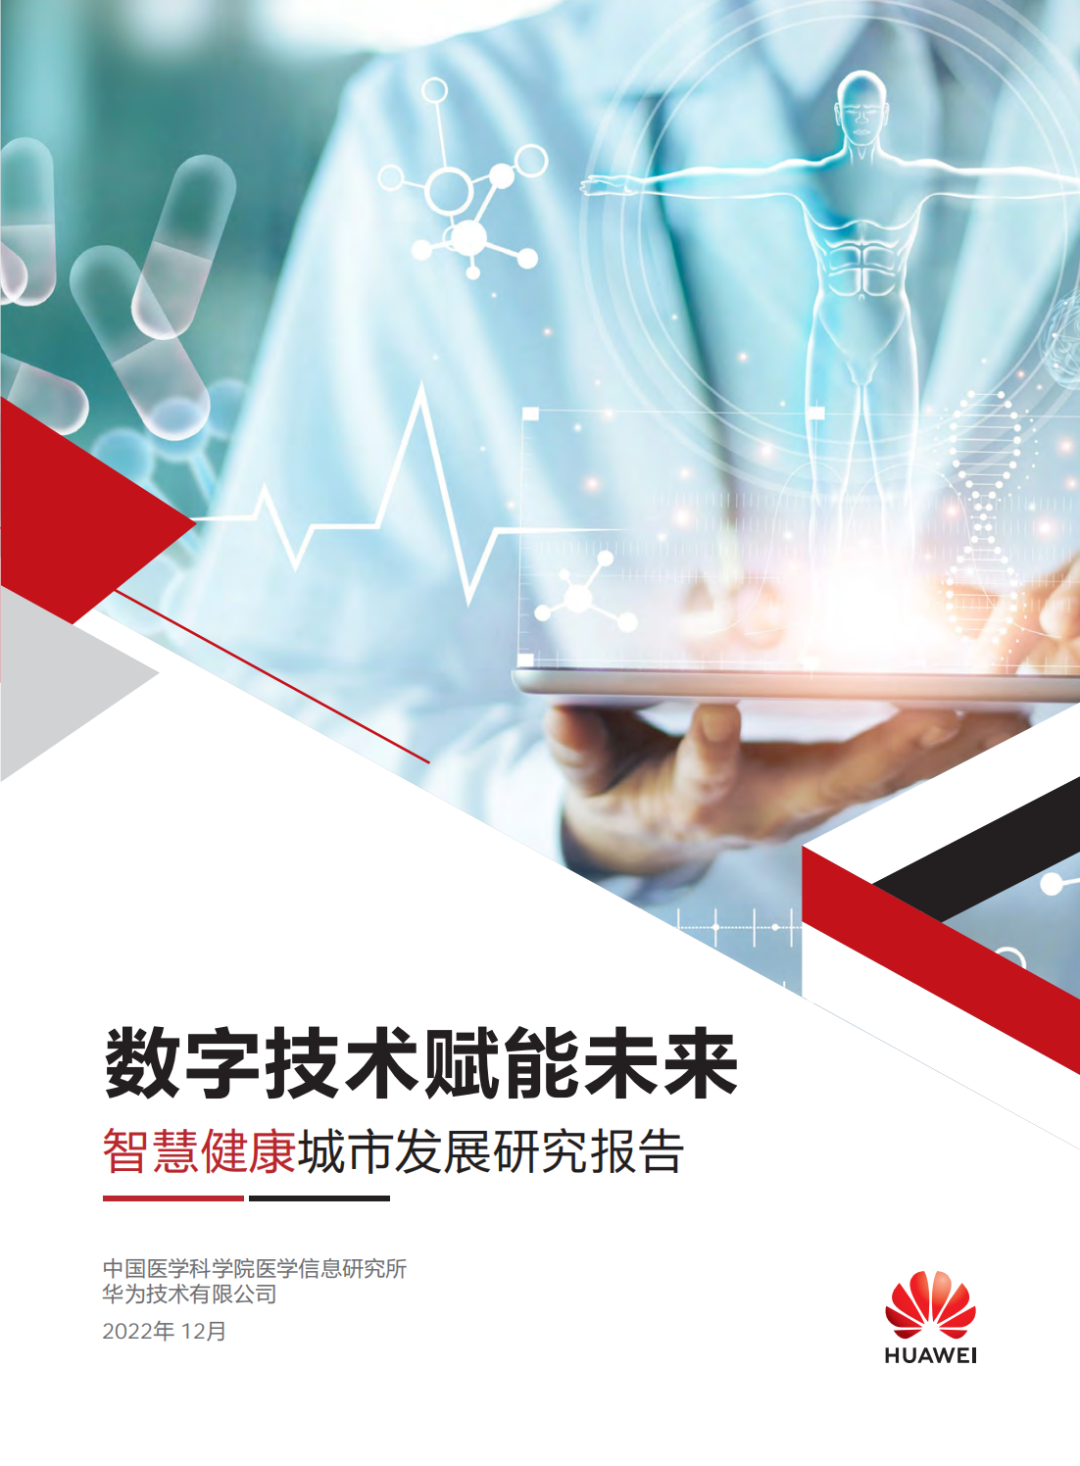 行业调研报告, 华为:中国智慧城市发展研究报告(数字技术赋能未来)